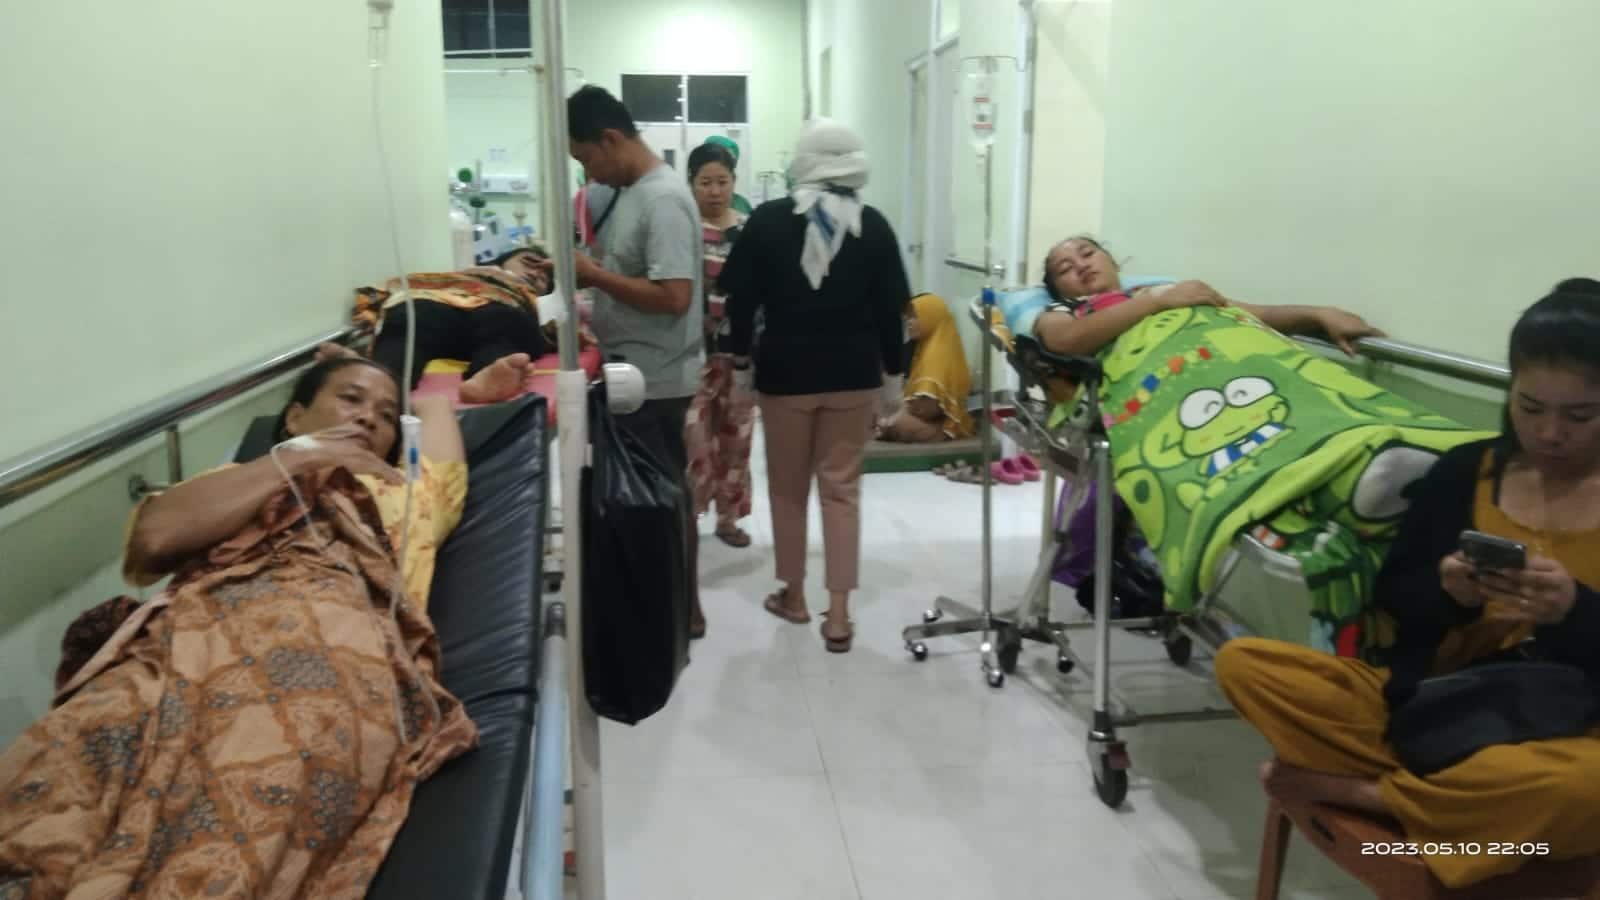 Pasien yang mengalami keracunan saat ini telah dilarikan ke Instalasi Gawat Darurat (IGD) RSUD dr Agoesdjam dan Rumah Sakit Fatimah Ketapang untuk mendapatkan perawatan medis dari dokter. (Foto: Adi LC)